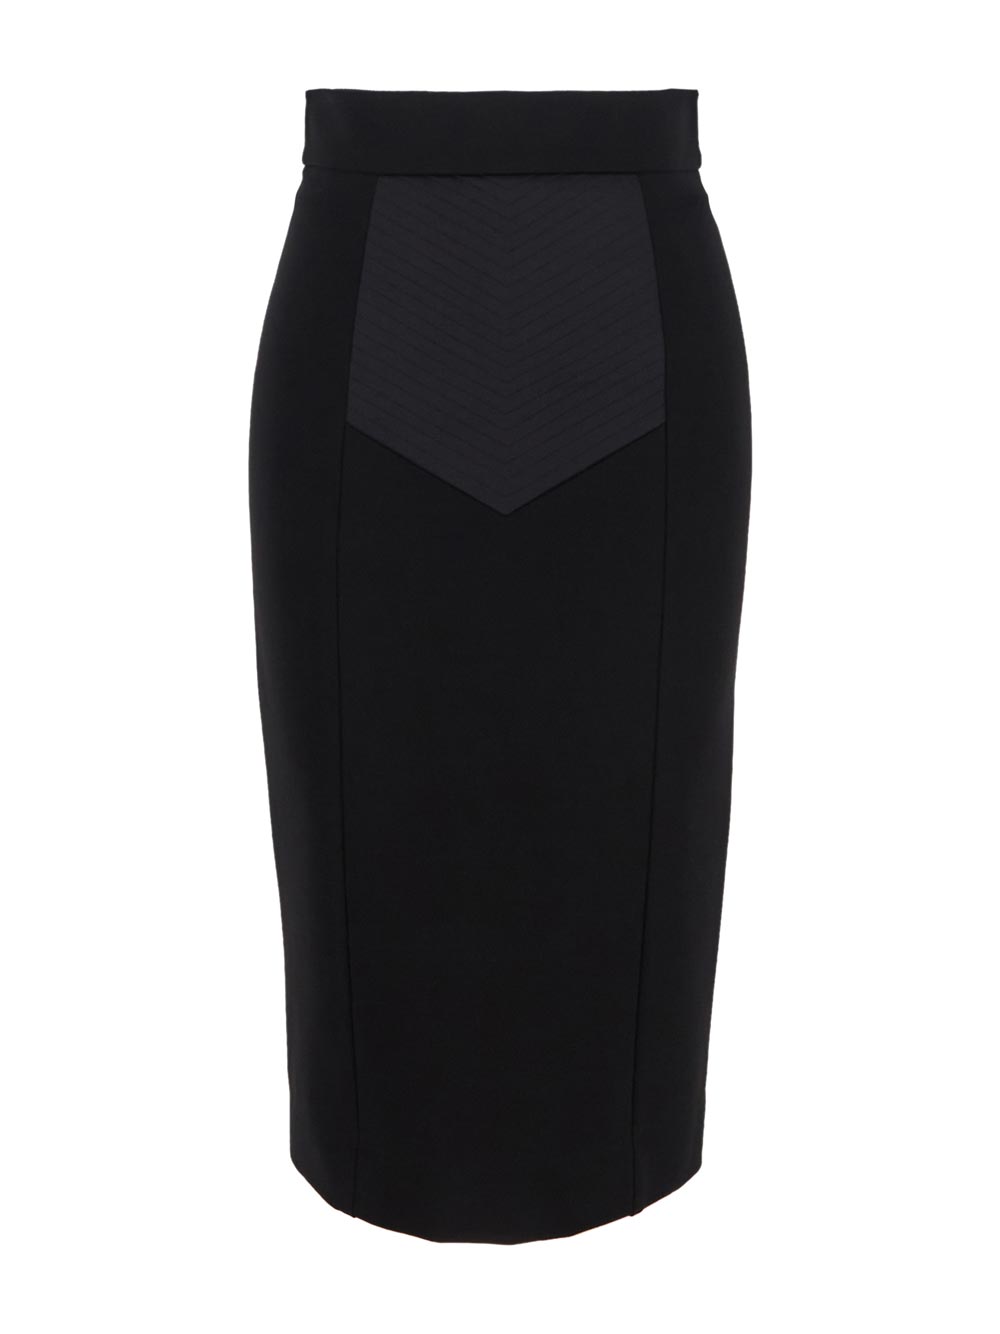 Dolce & Gabbana Technical Jersey Calf-Length Skirt